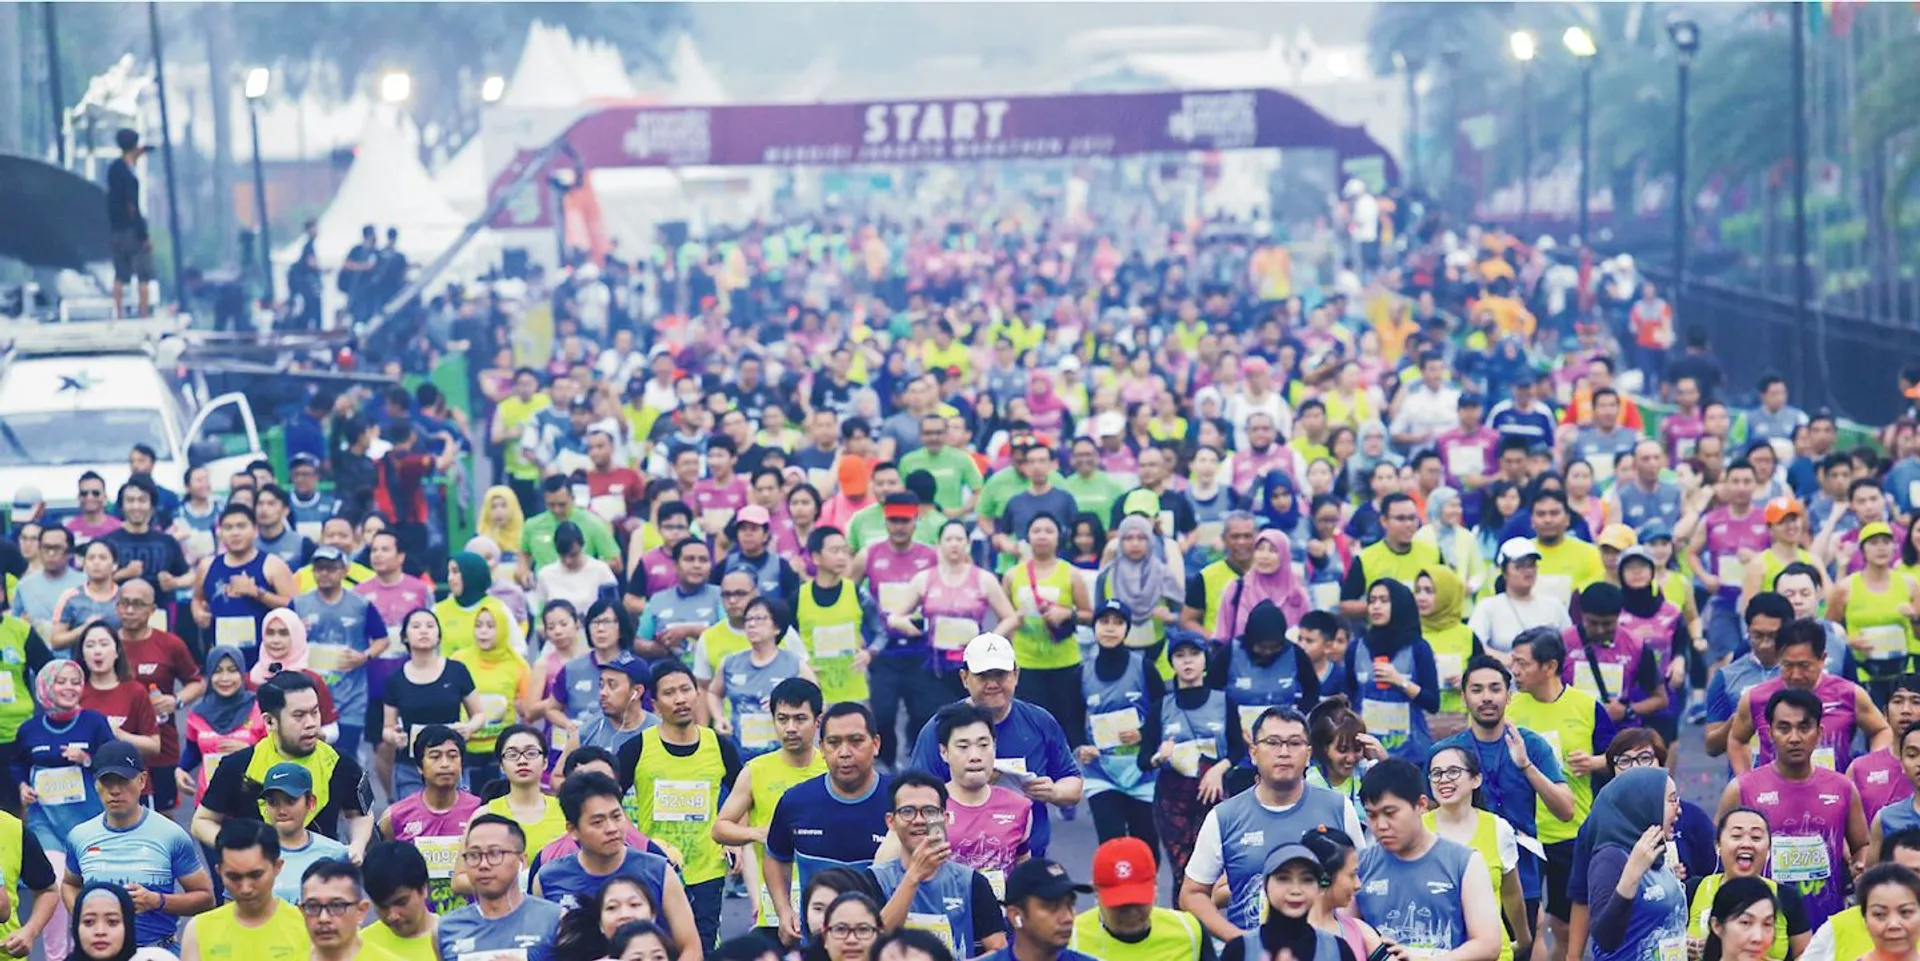 Jakarta Marathon